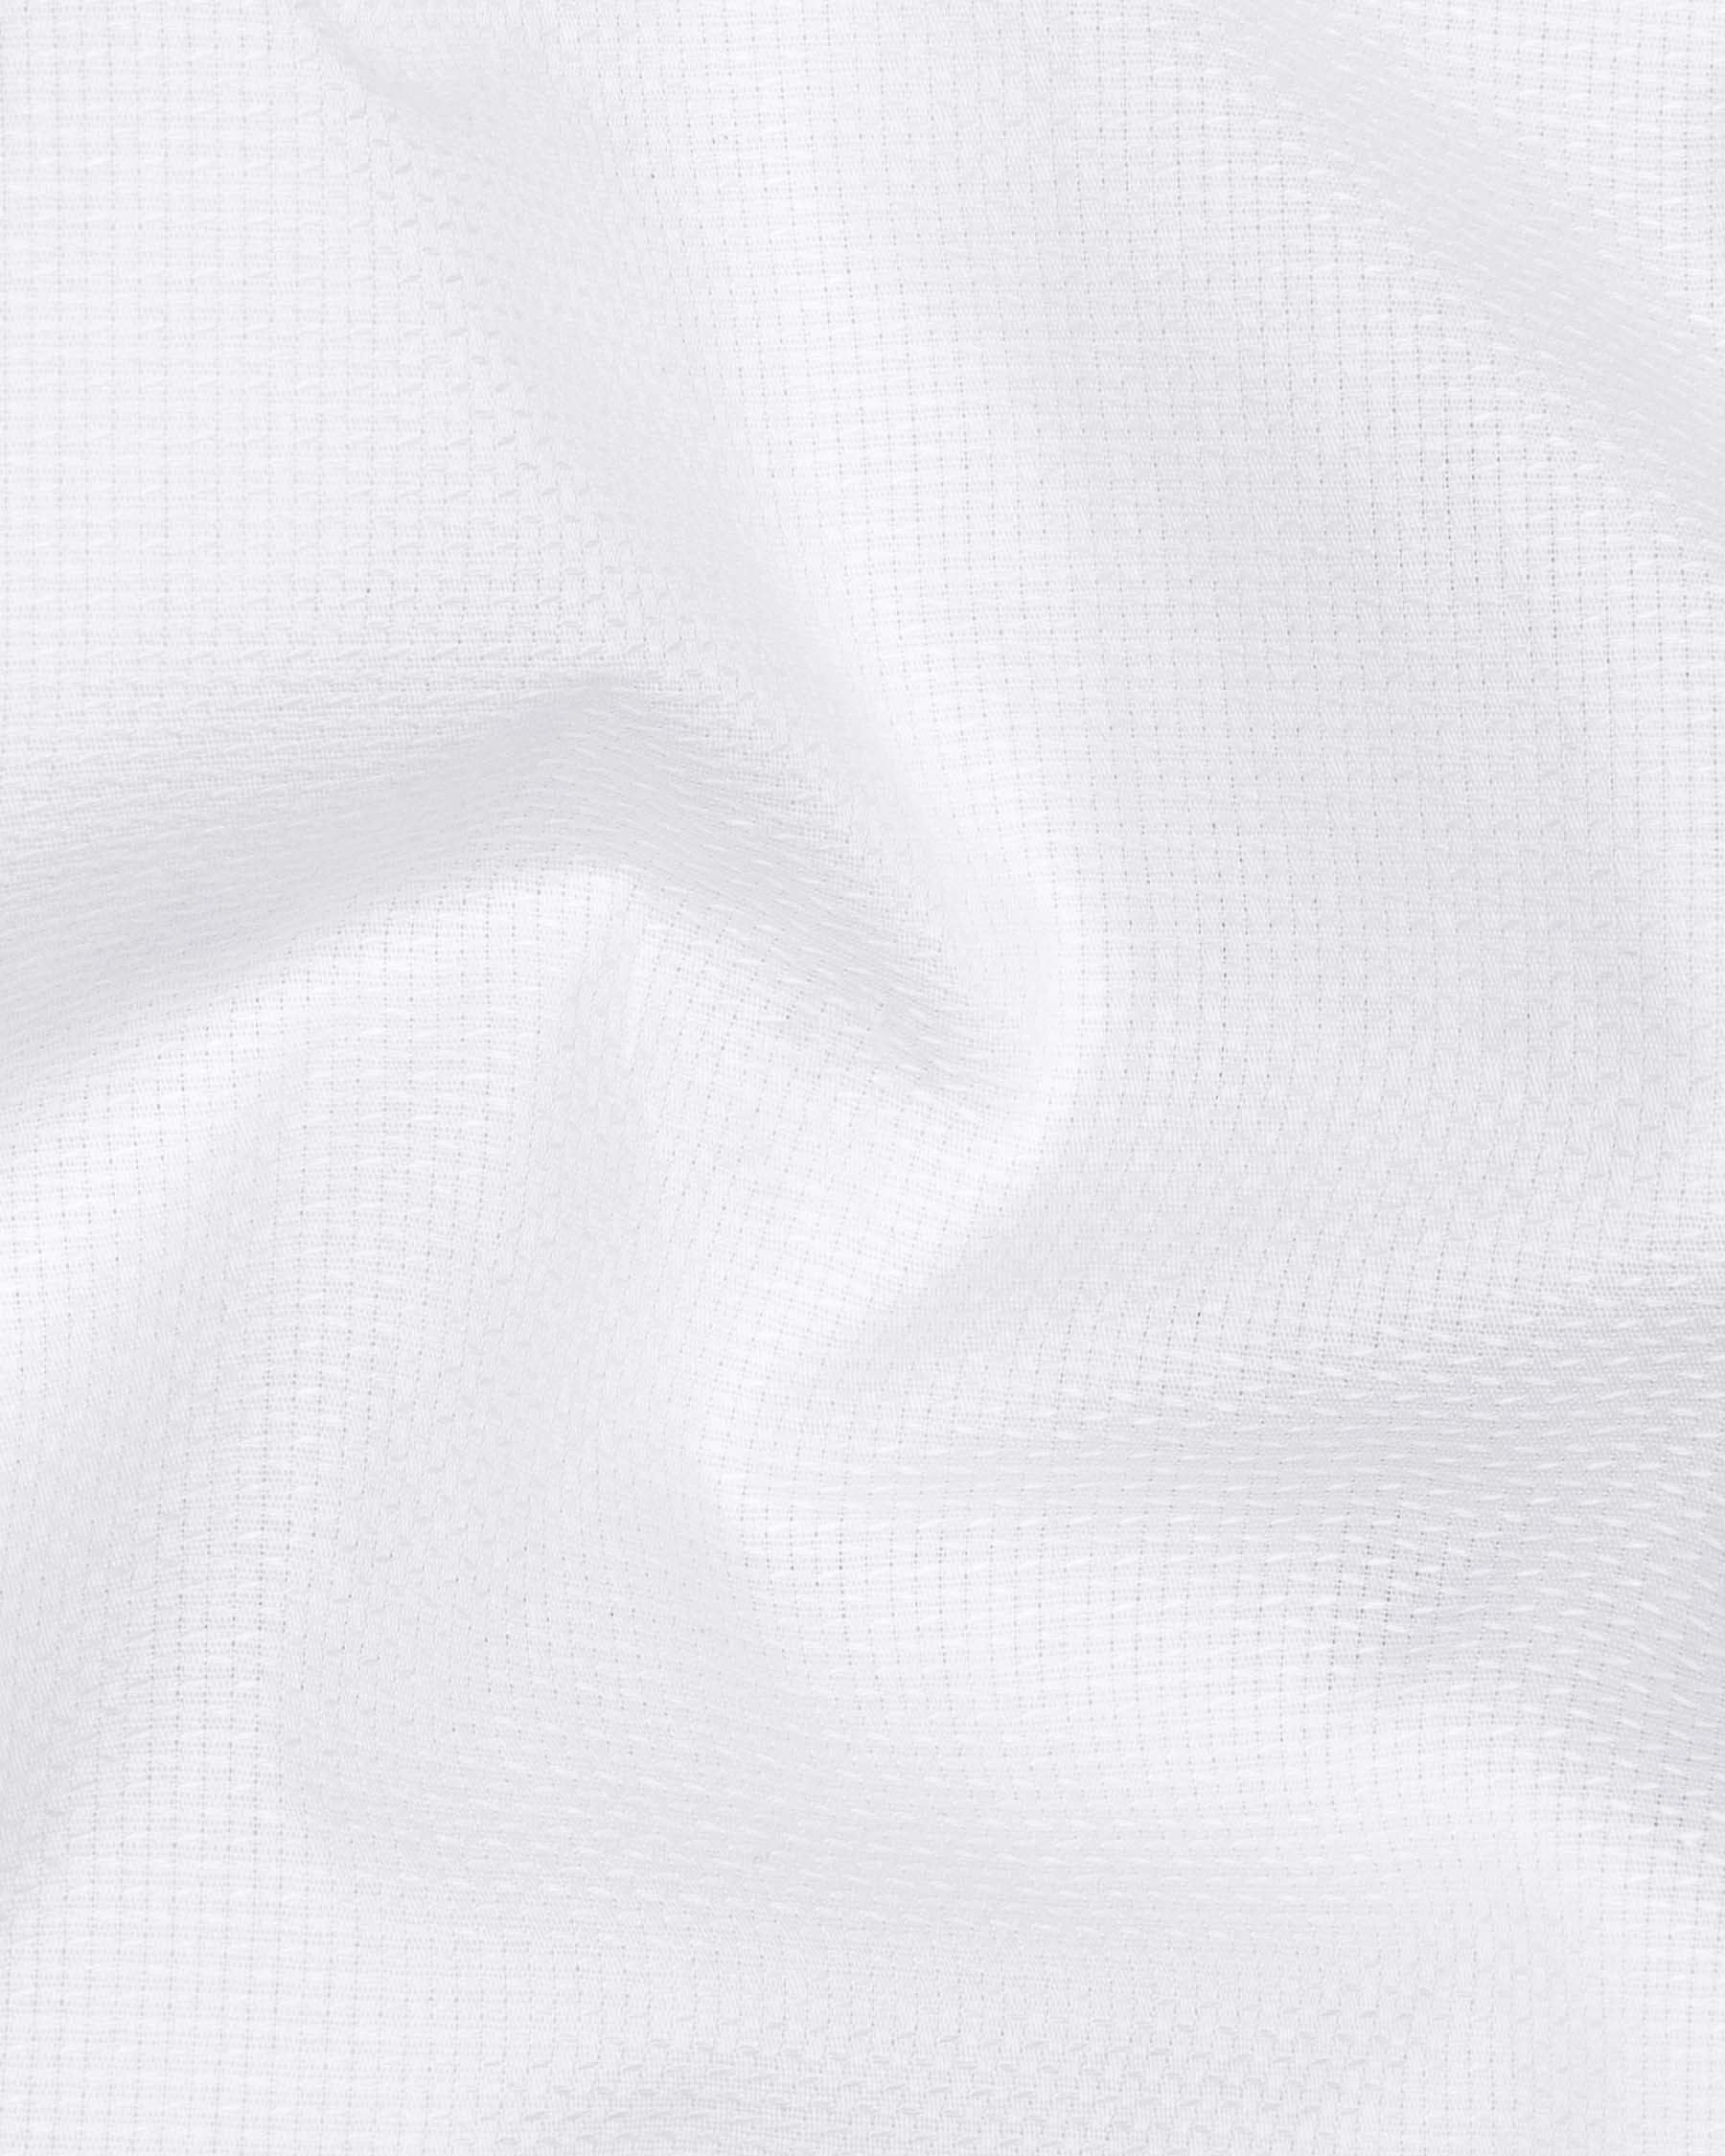 Bright White Dobby Textured Premium Giza Cotton Shirt 5934-CA-38, 5934-CA-H-38, 5934-CA-39, 5934-CA-H-39, 5934-CA-40, 5934-CA-H-40, 5934-CA-42, 5934-CA-H-42, 5934-CA-44, 5934-CA-H-44, 5934-CA-46, 5934-CA-H-46, 5934-CA-48, 5934-CA-H-48, 5934-CA-50, 5934-CA-H-50, 5934-CA-52, 5934-CA-H-52